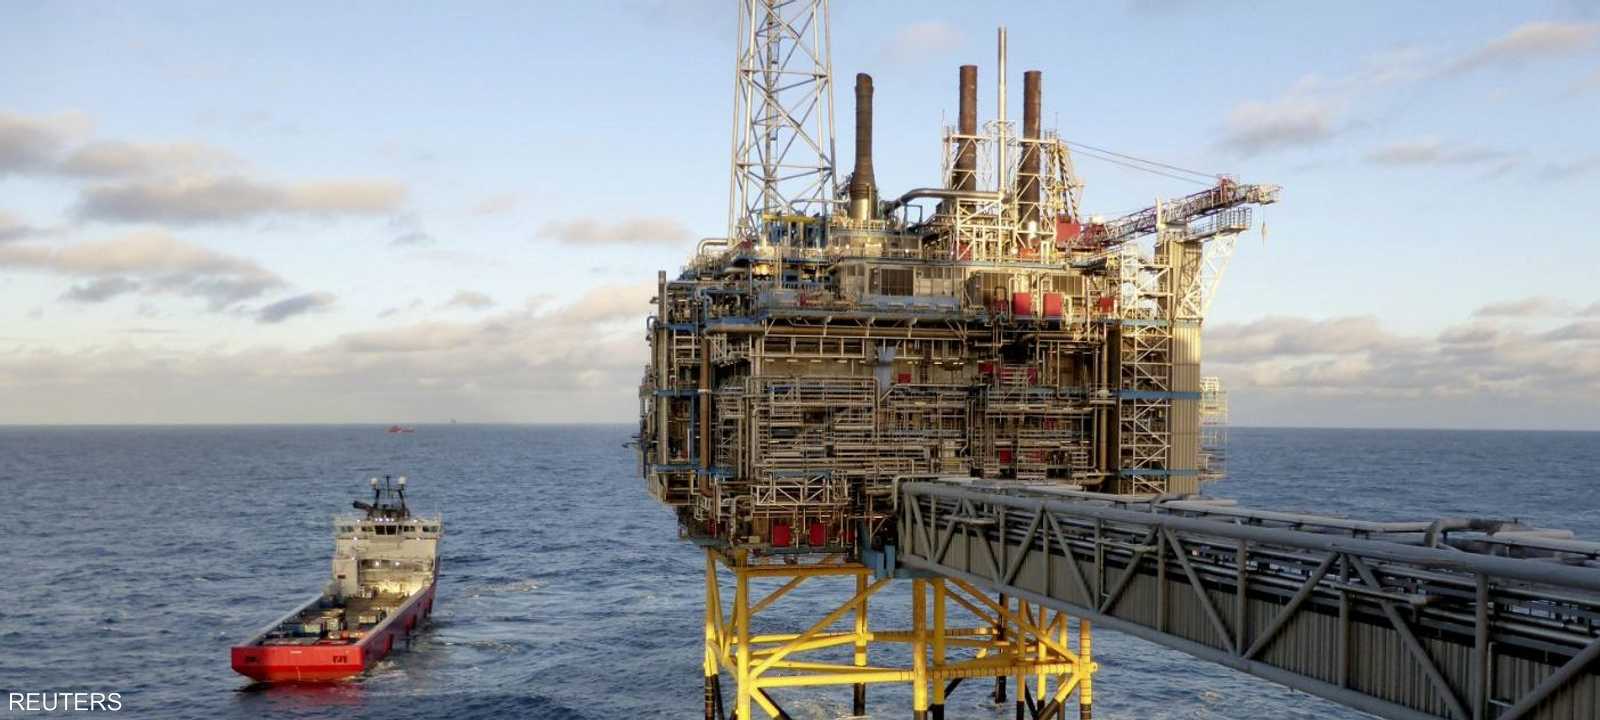 منصة للنفط والغاز قبالة السواحل النرويجية